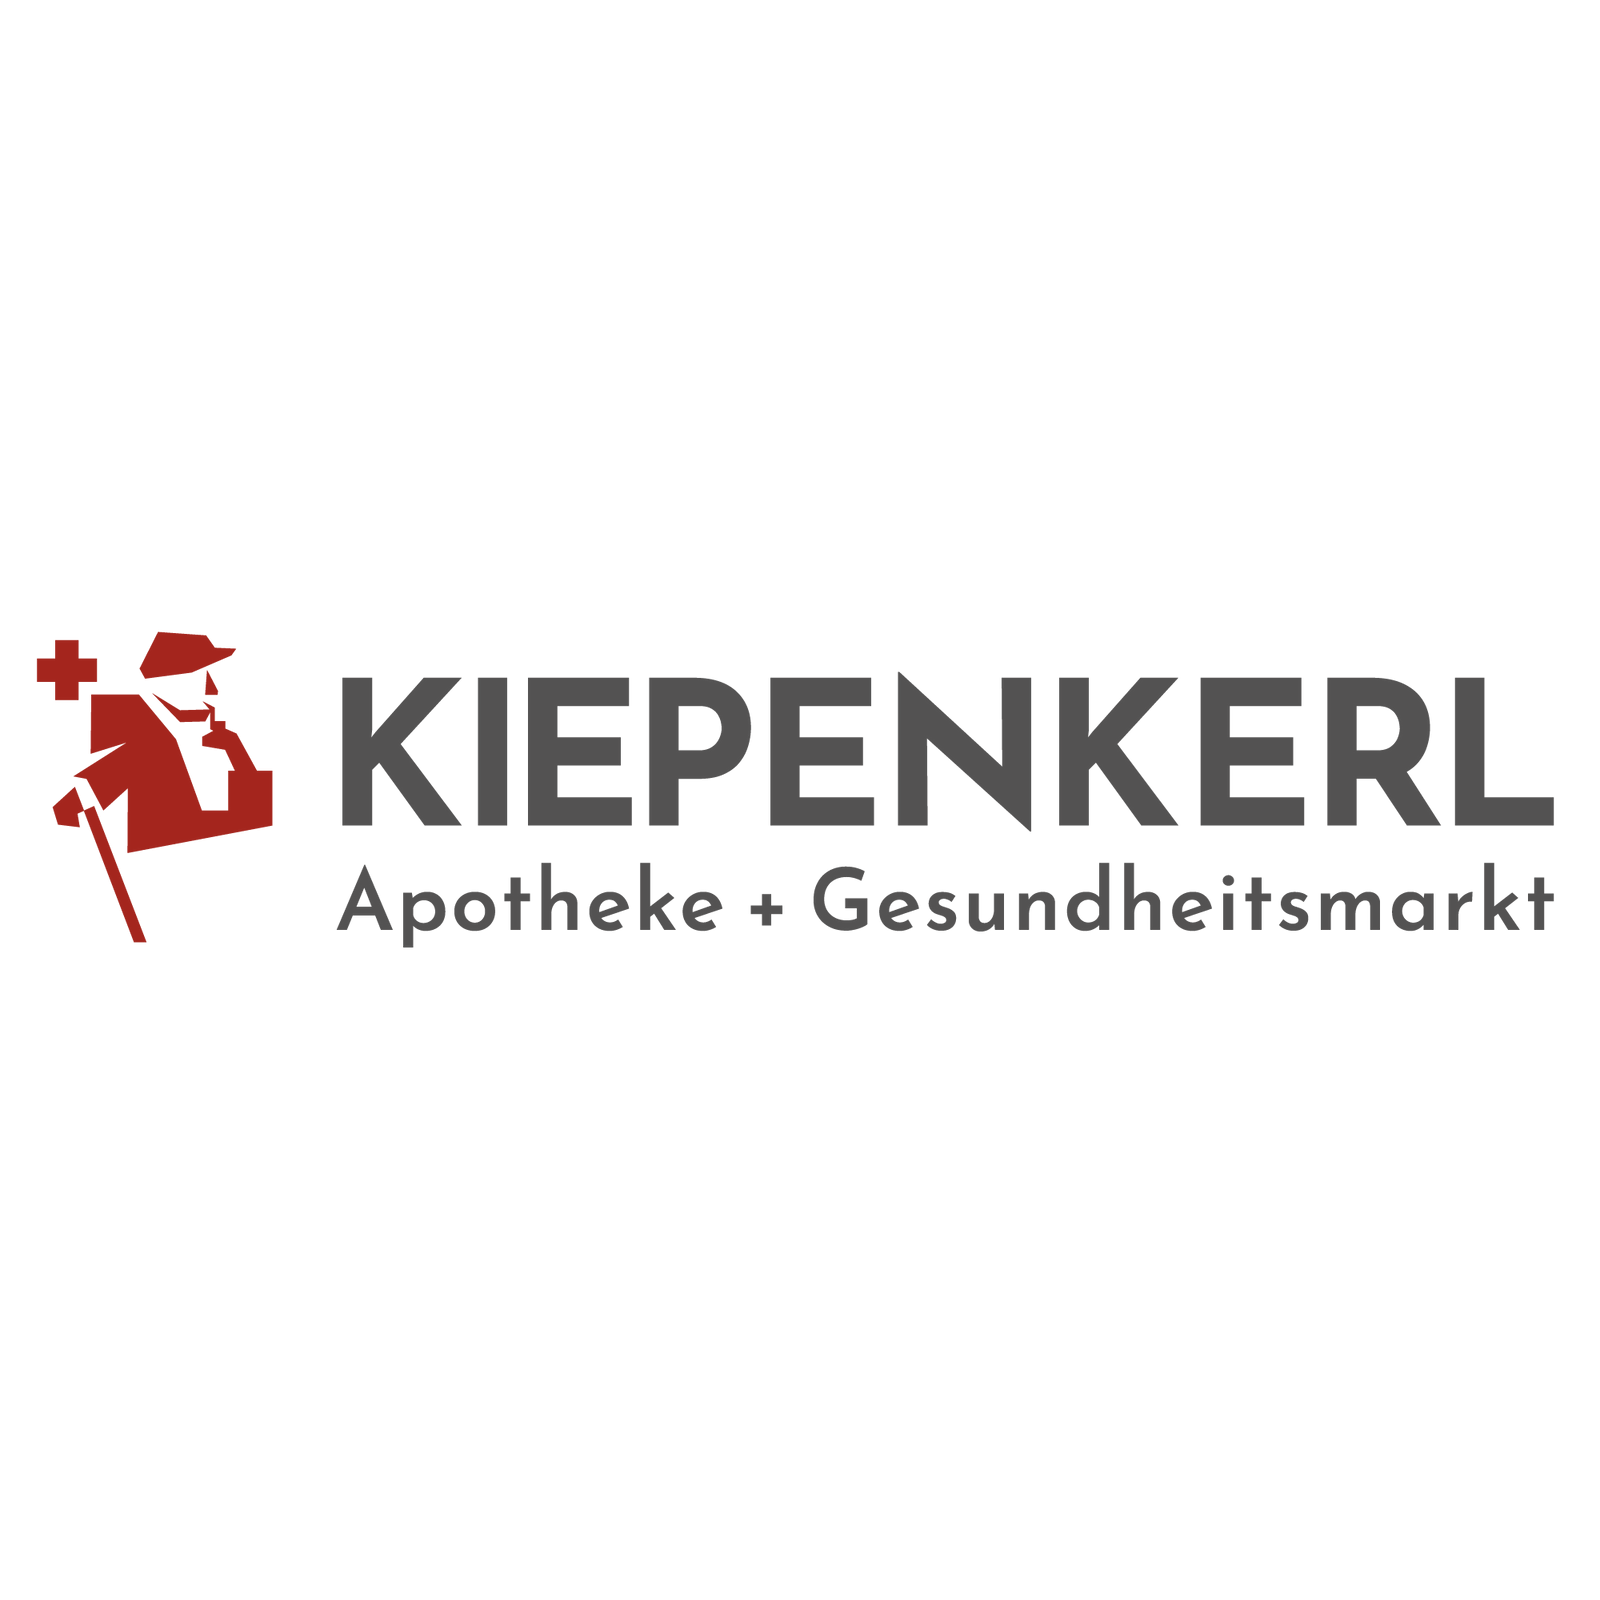 Kiepenkerl-Apotheke in Hamm in Westfalen - Logo